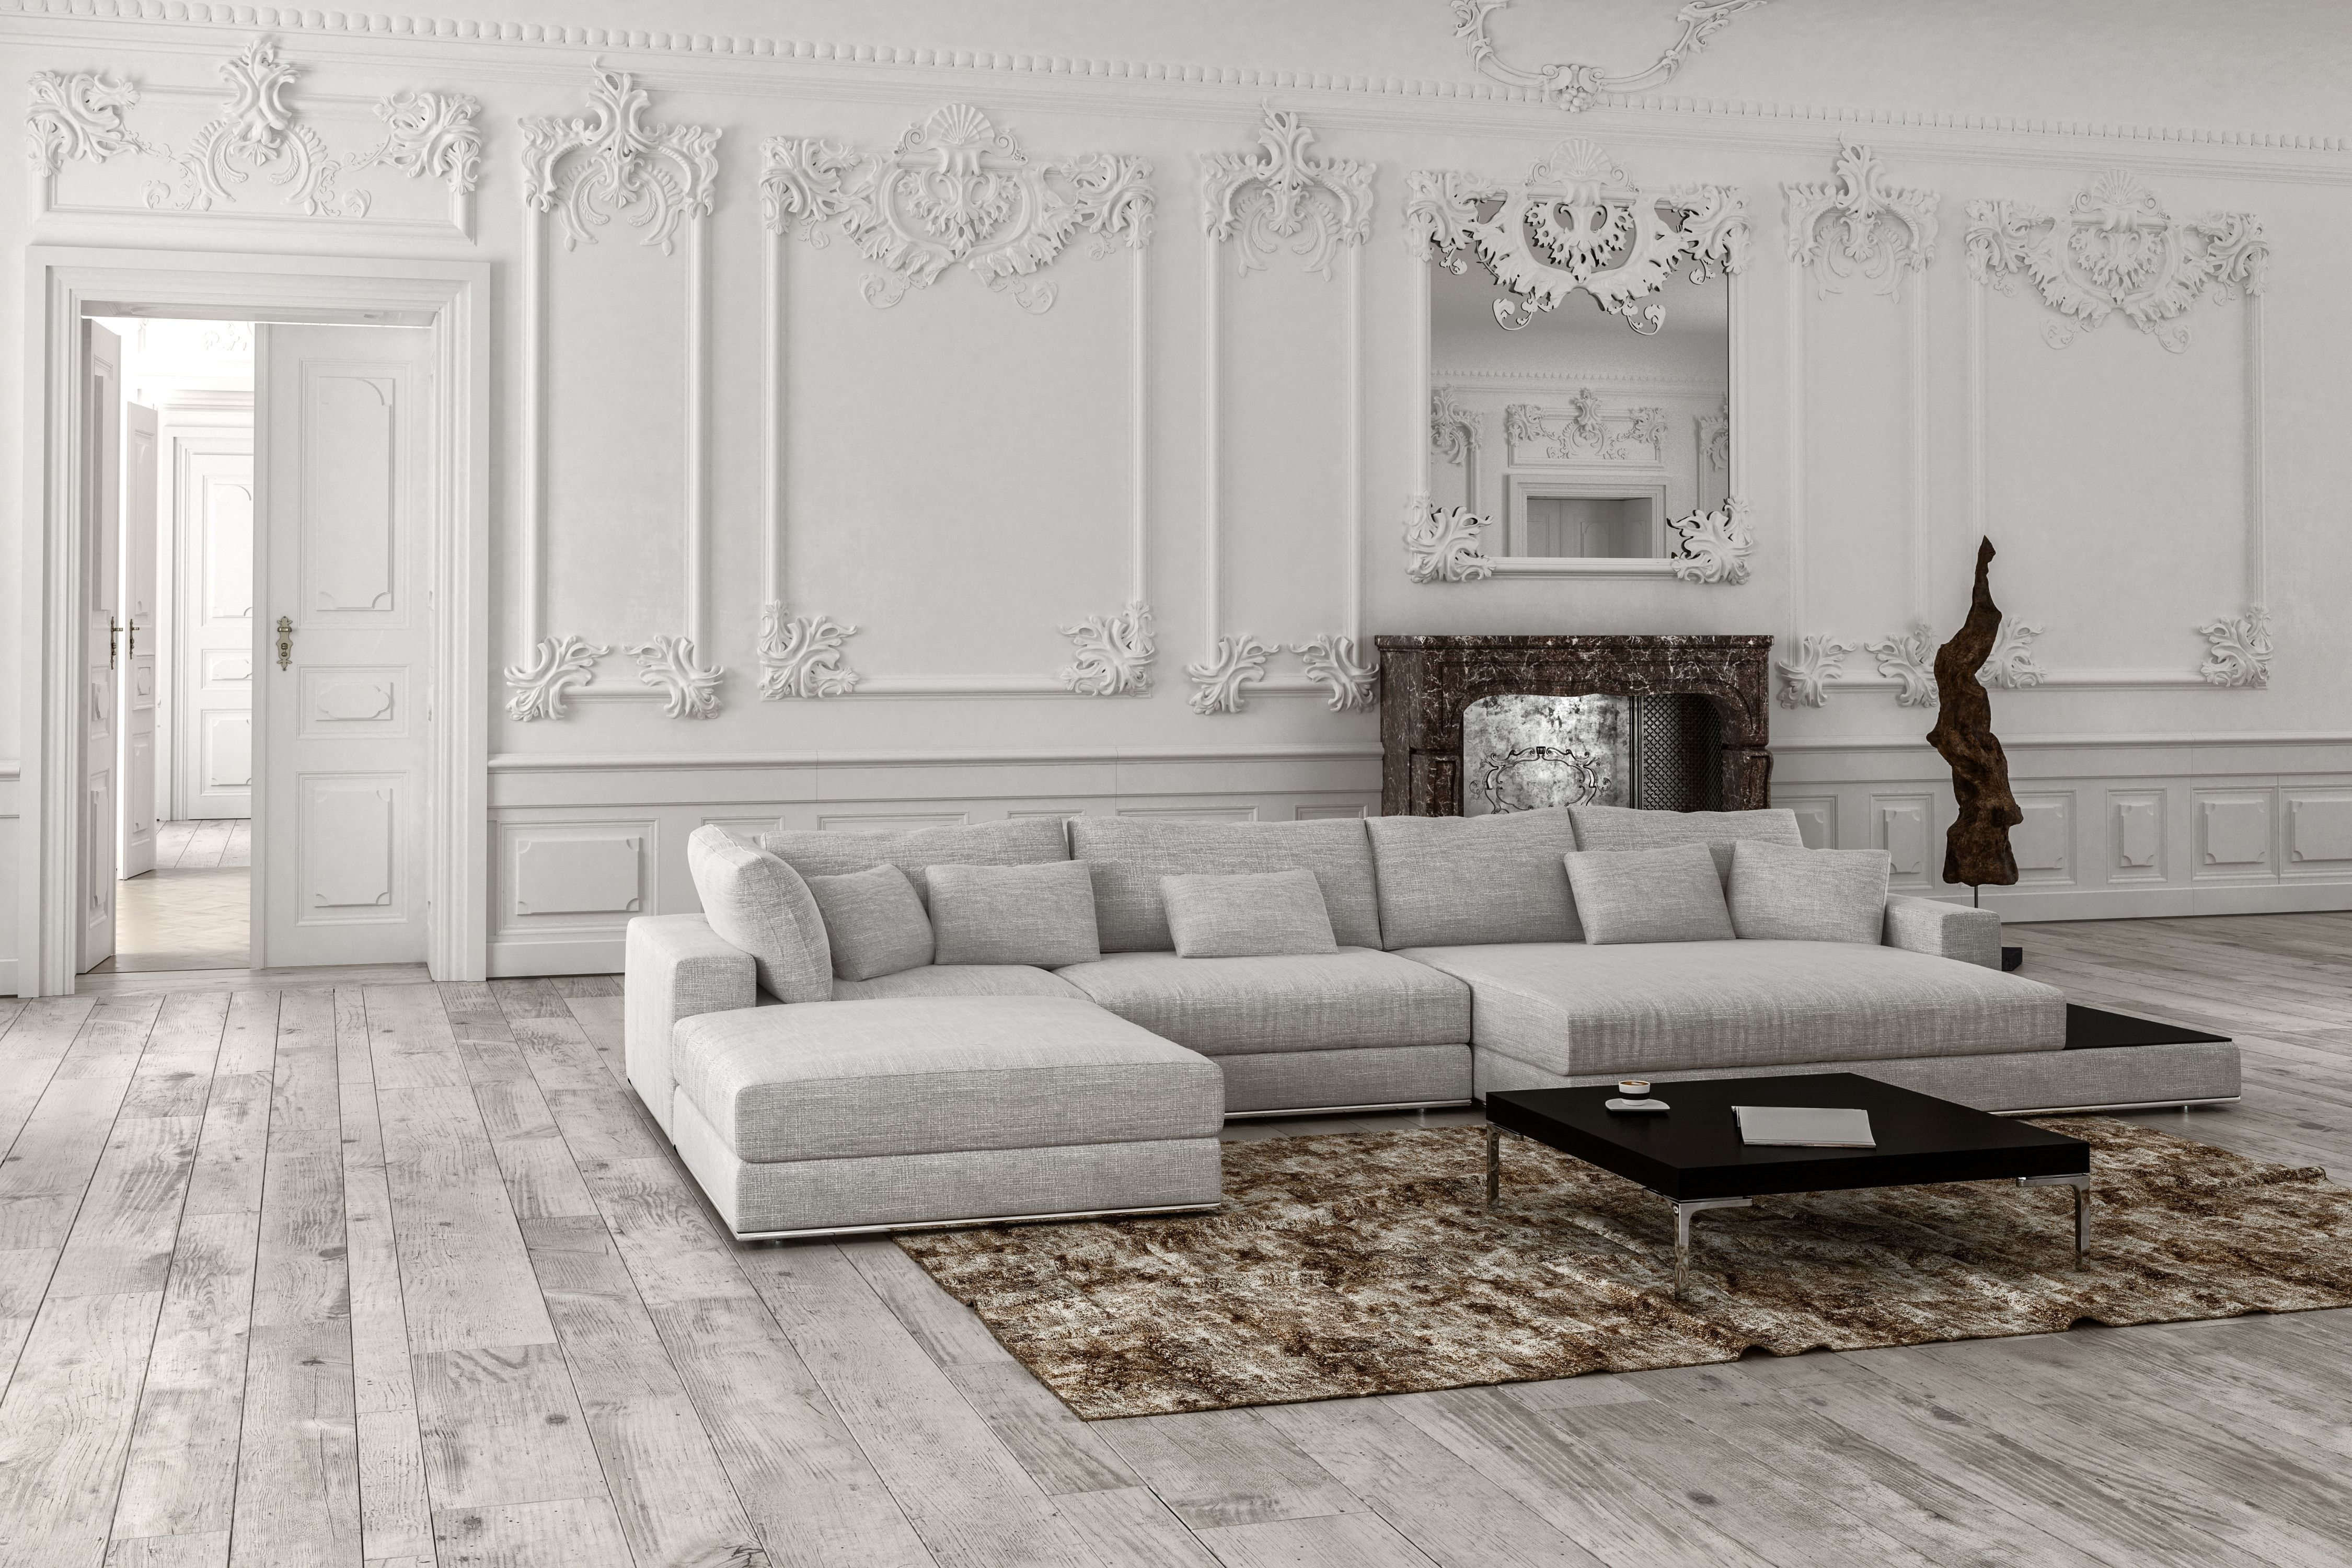 classic villa living room furniture